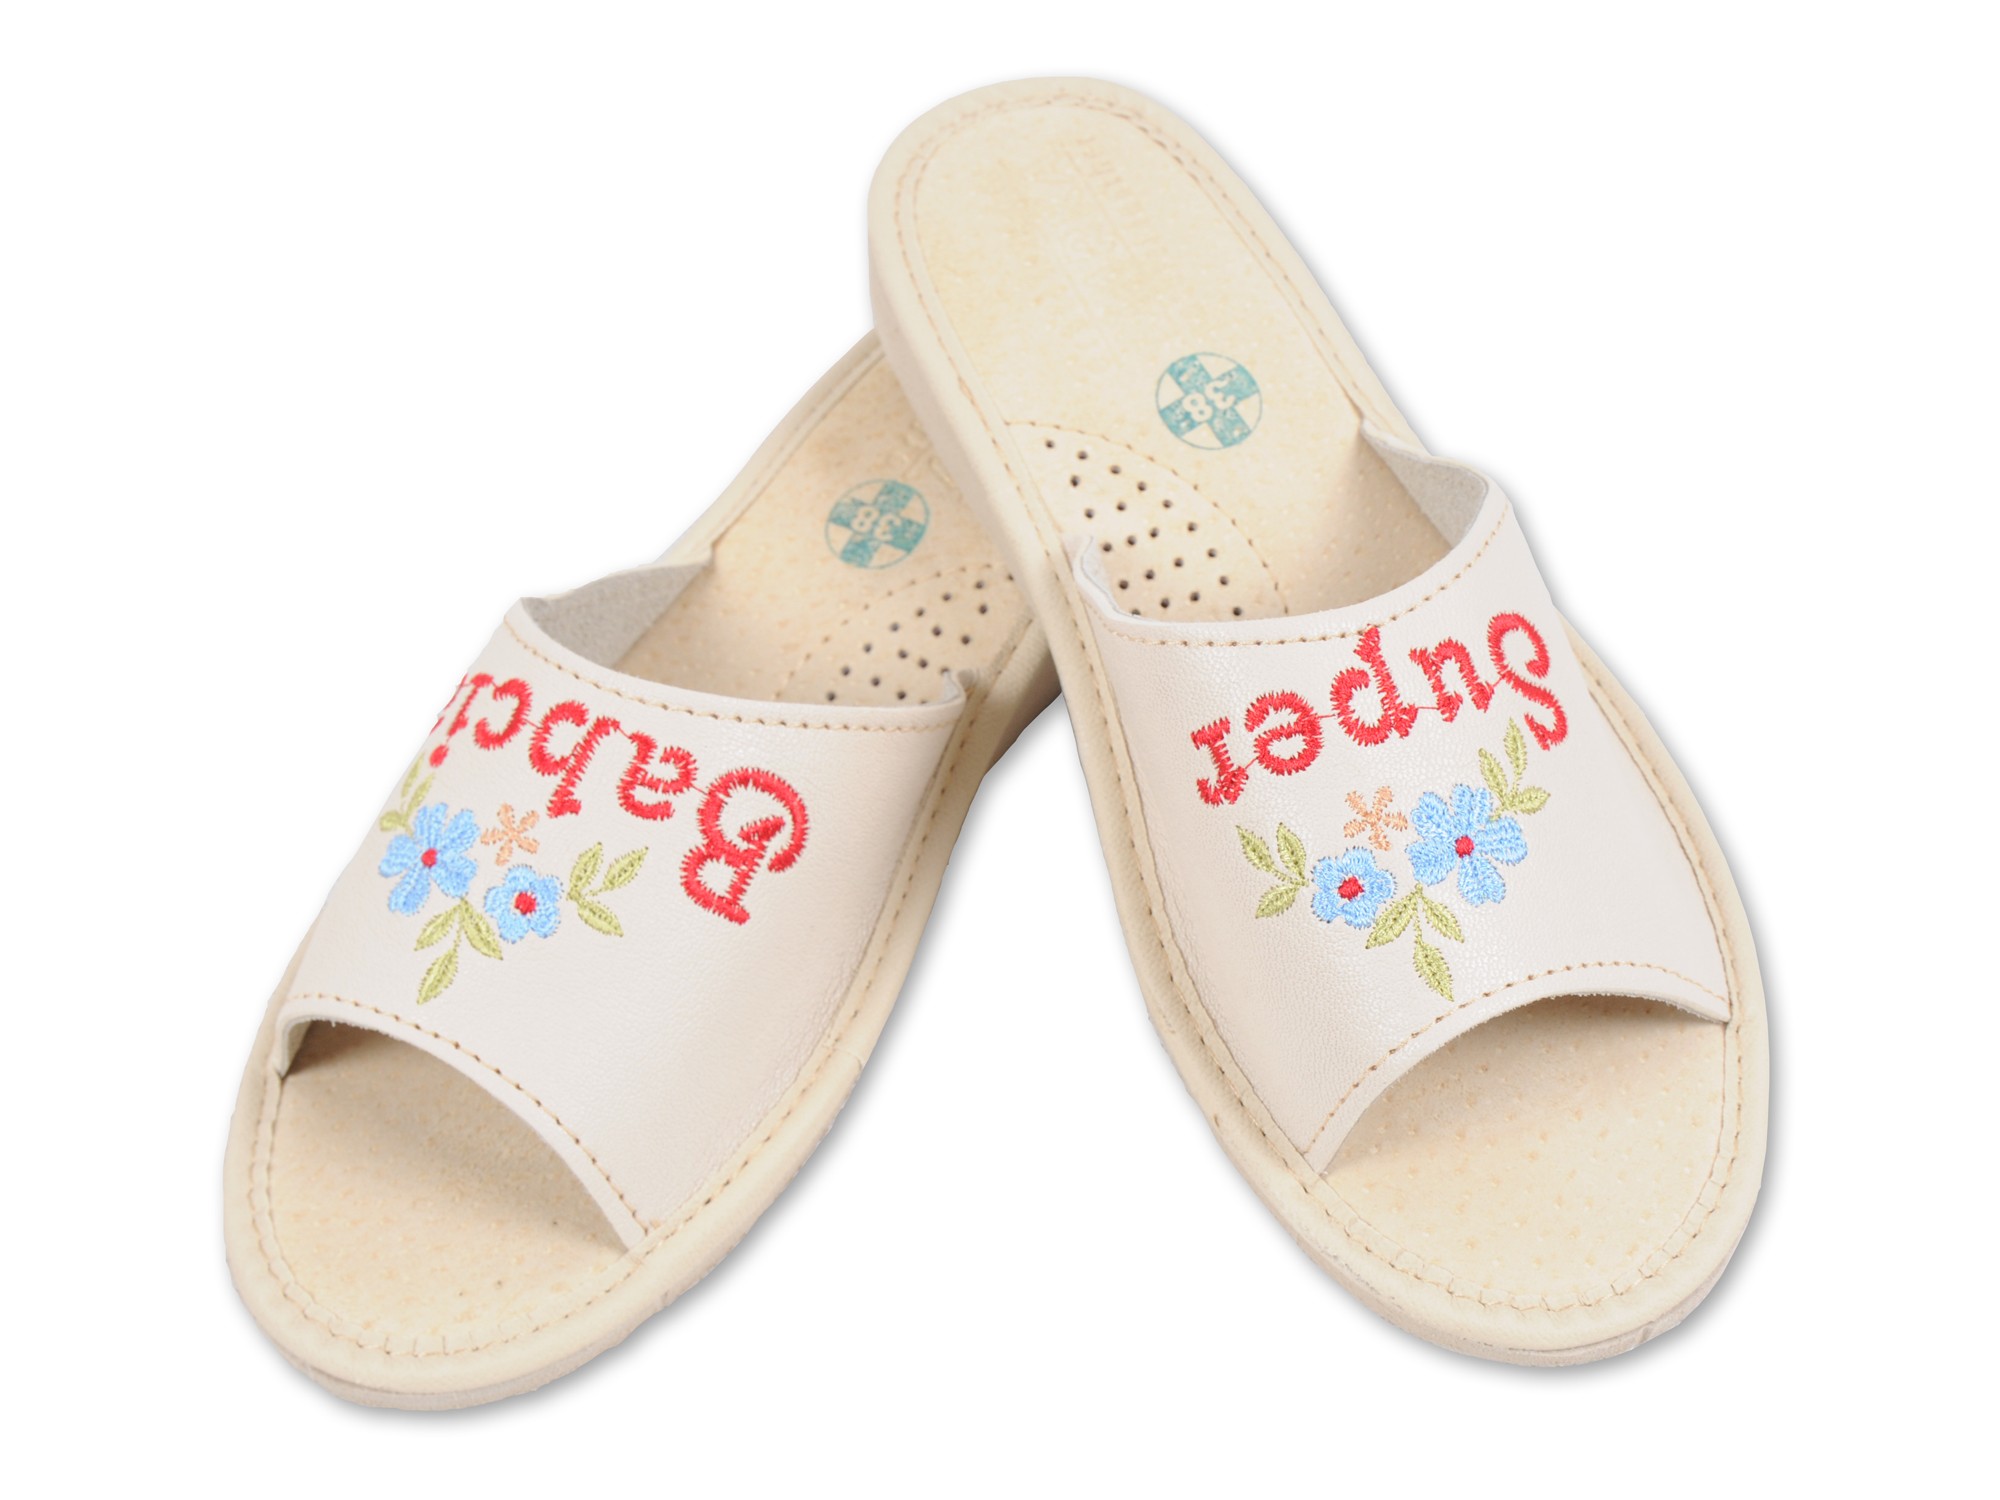 Super Babcia - Skórzane pantofle haftowane - Prezent na dzień Babci - Certyfikat